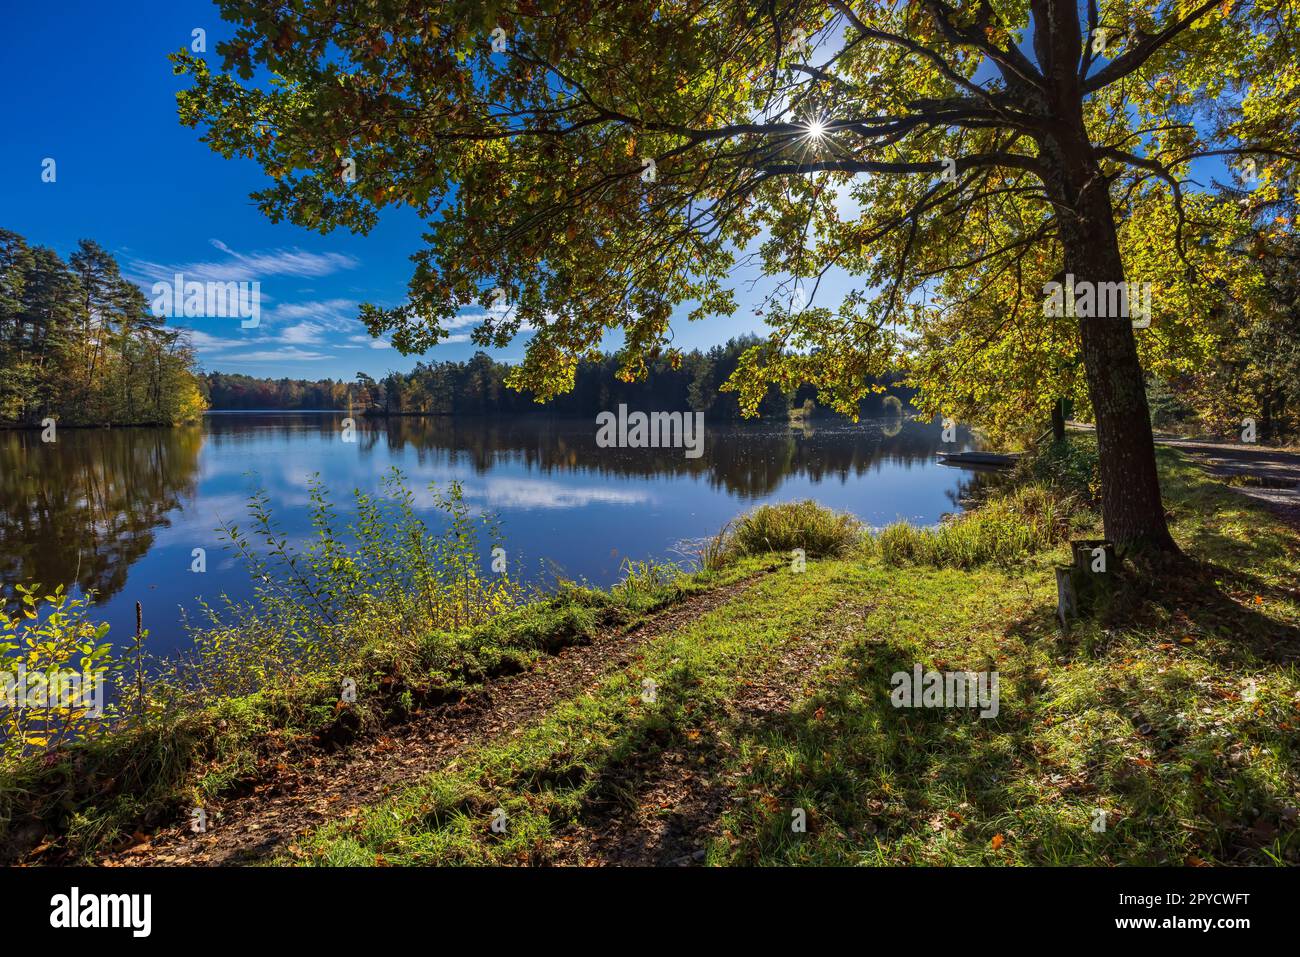 Typical landscape in Trebonsko region near Trebon city in Southern Bohemia, Czech Republic Stock Photo